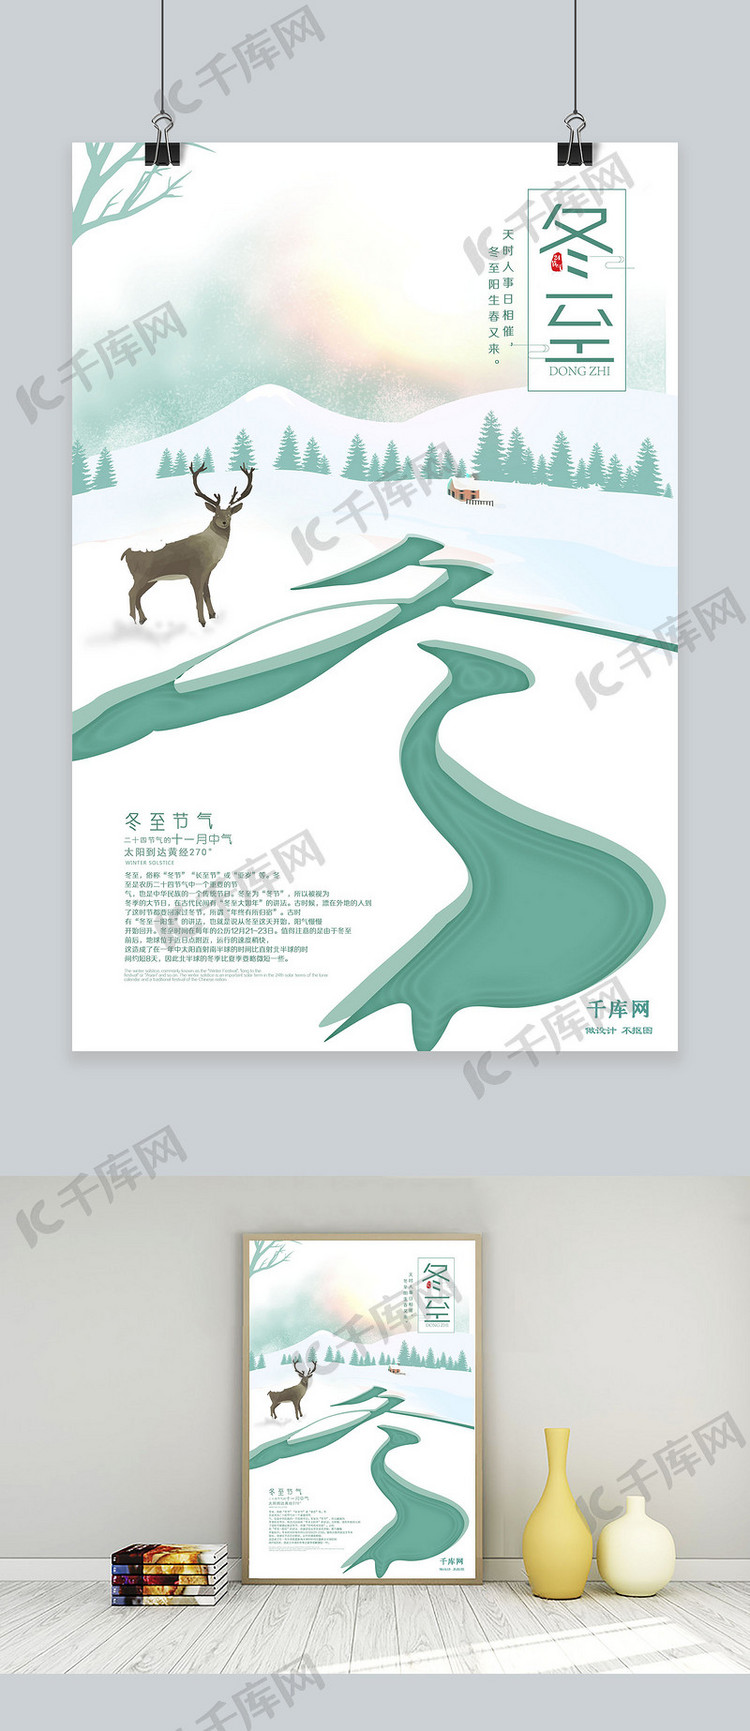 创意二十四节气之冬至麋鹿雪景海报